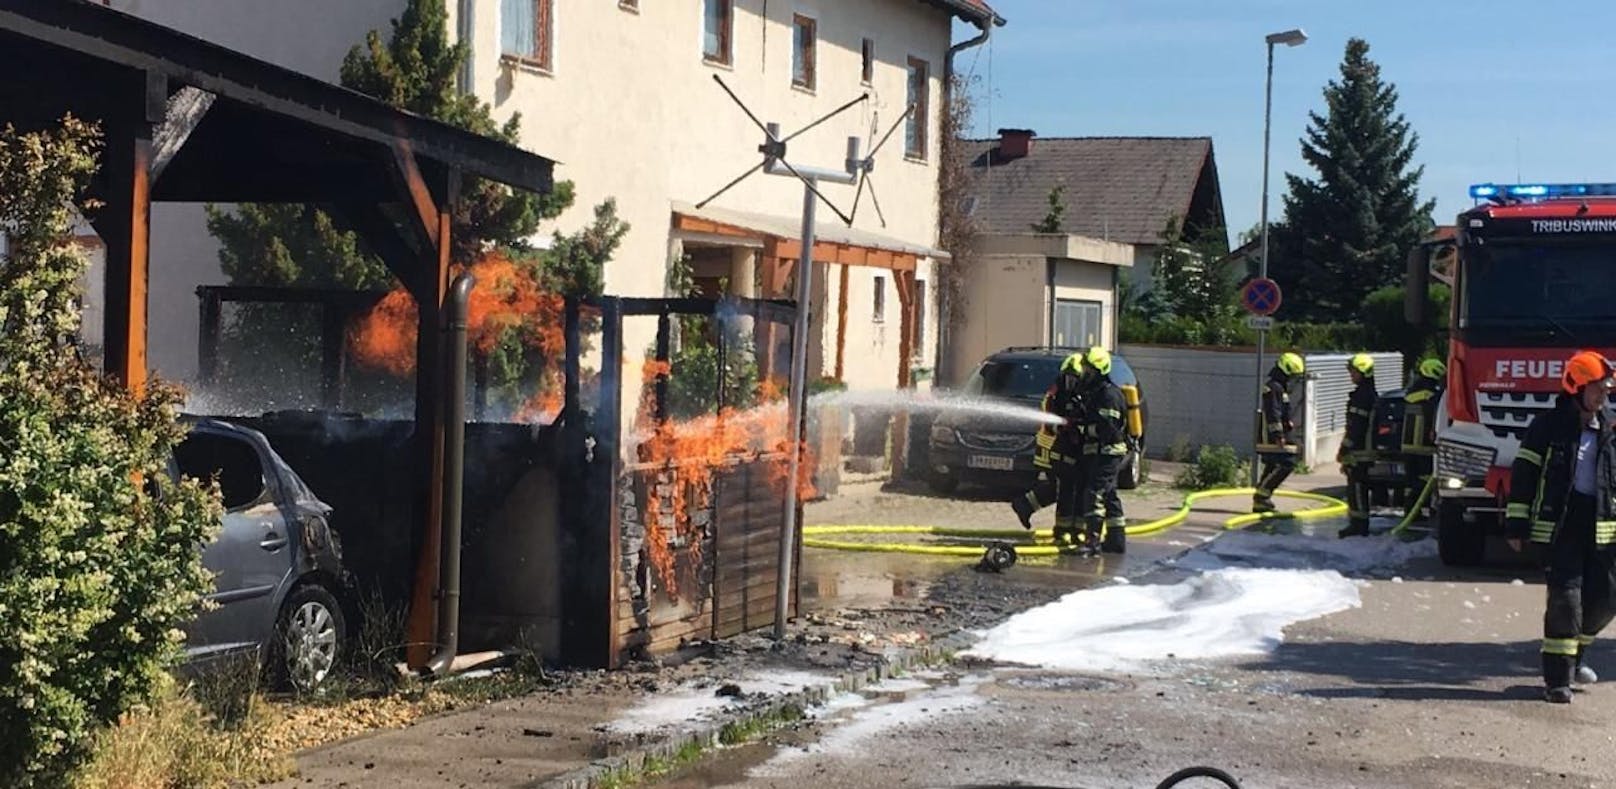 Feuer bei Gasleitung: Evakuierung von Häusern